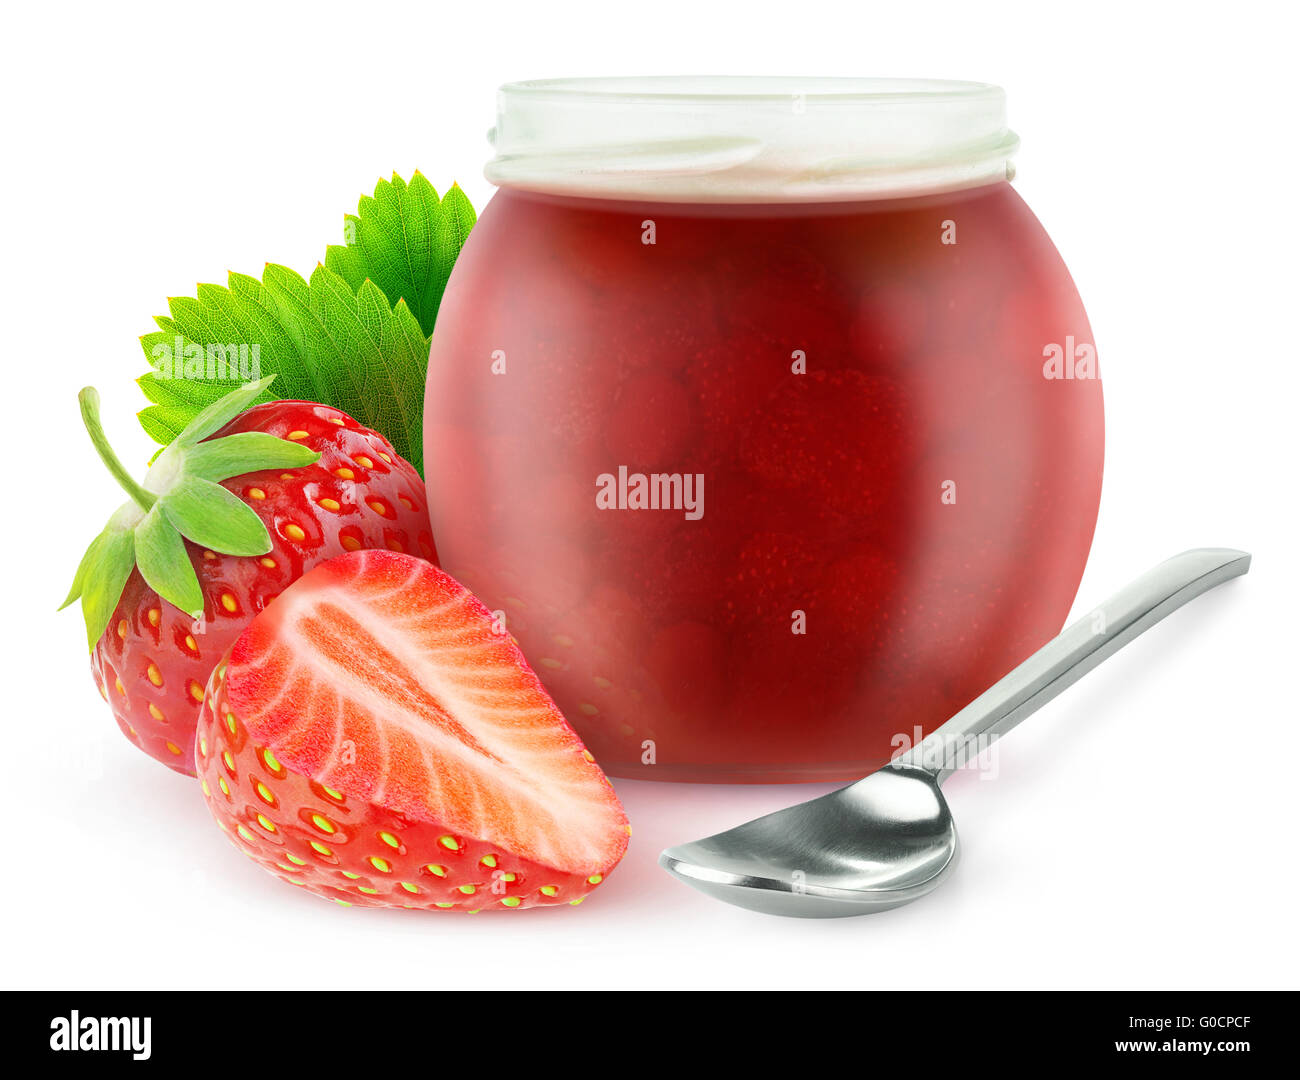 Marmelade de fraises isolé. Couper les fraises et pot de confiture ouvert, isolé sur fond blanc avec clipping path Banque D'Images